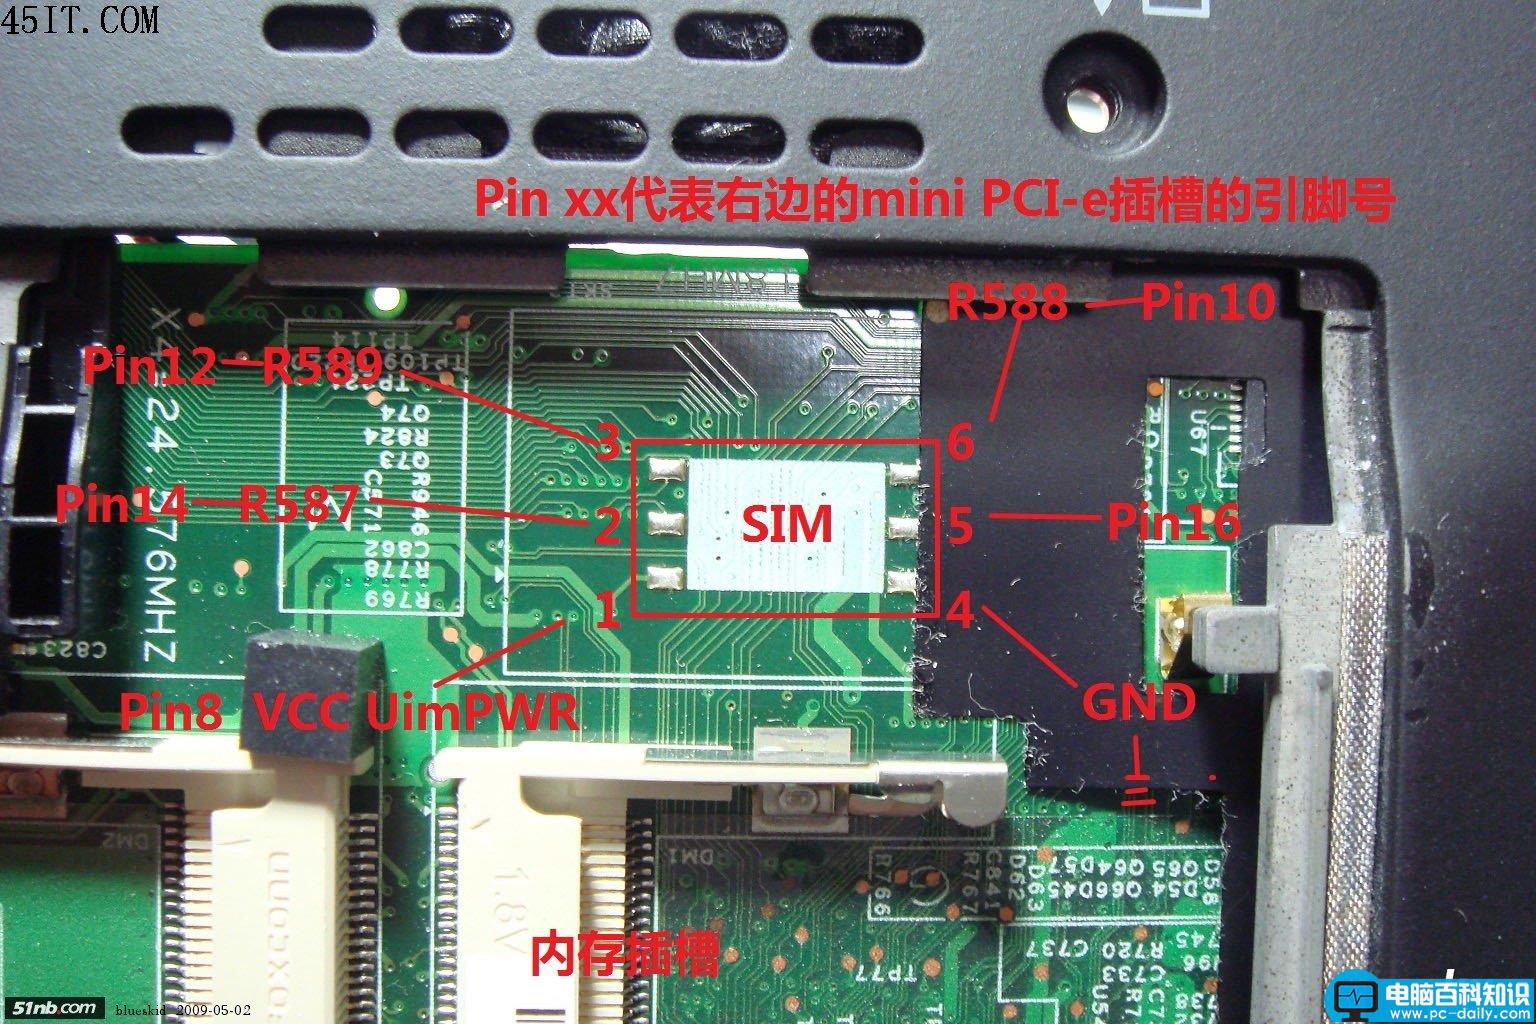 ThinkPad,PCI-e